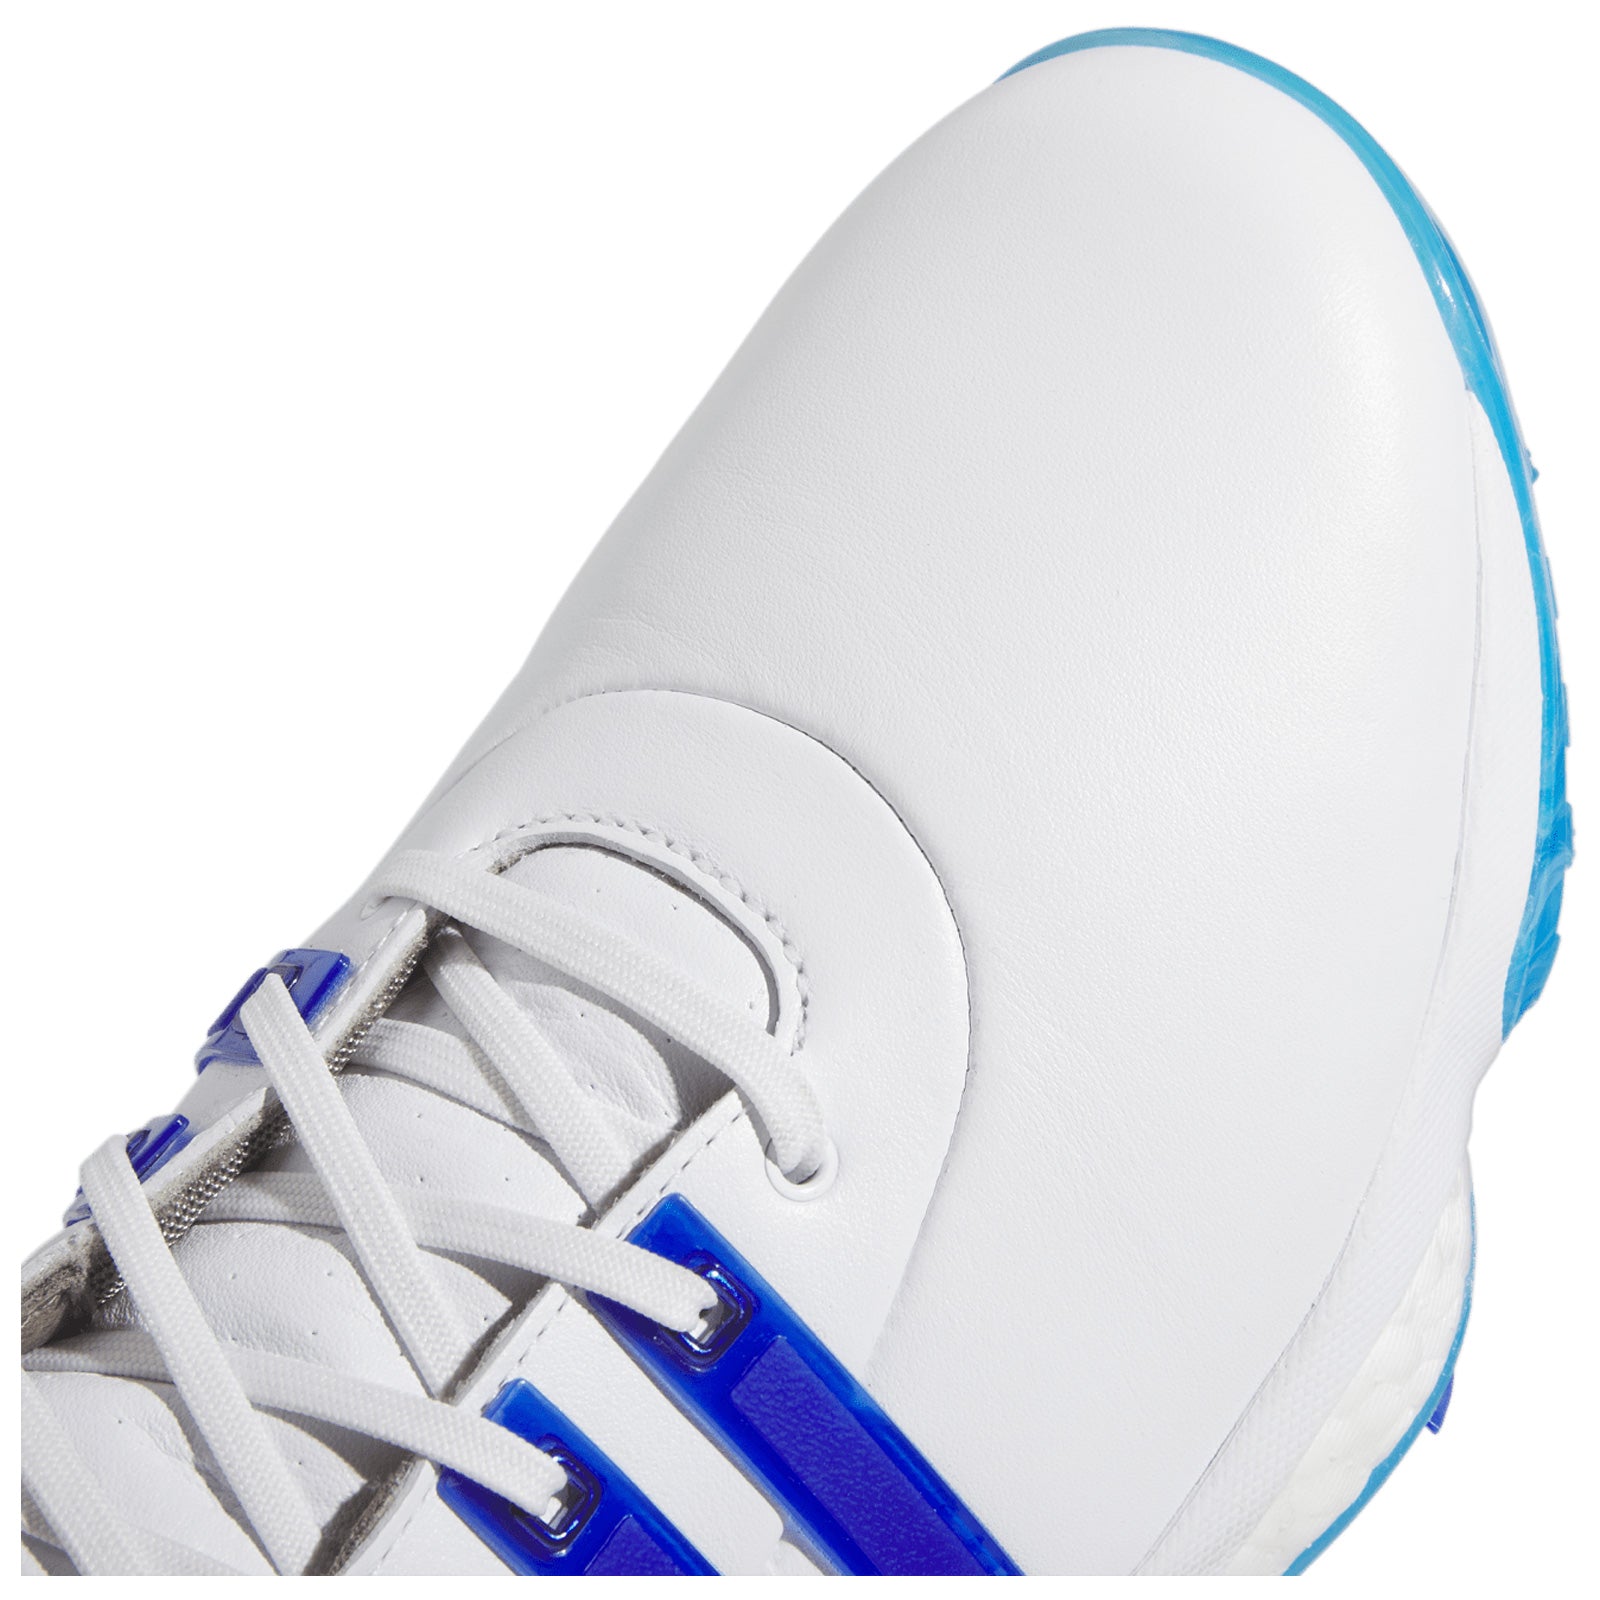 adidas Mens Tour360 Golf Shoes